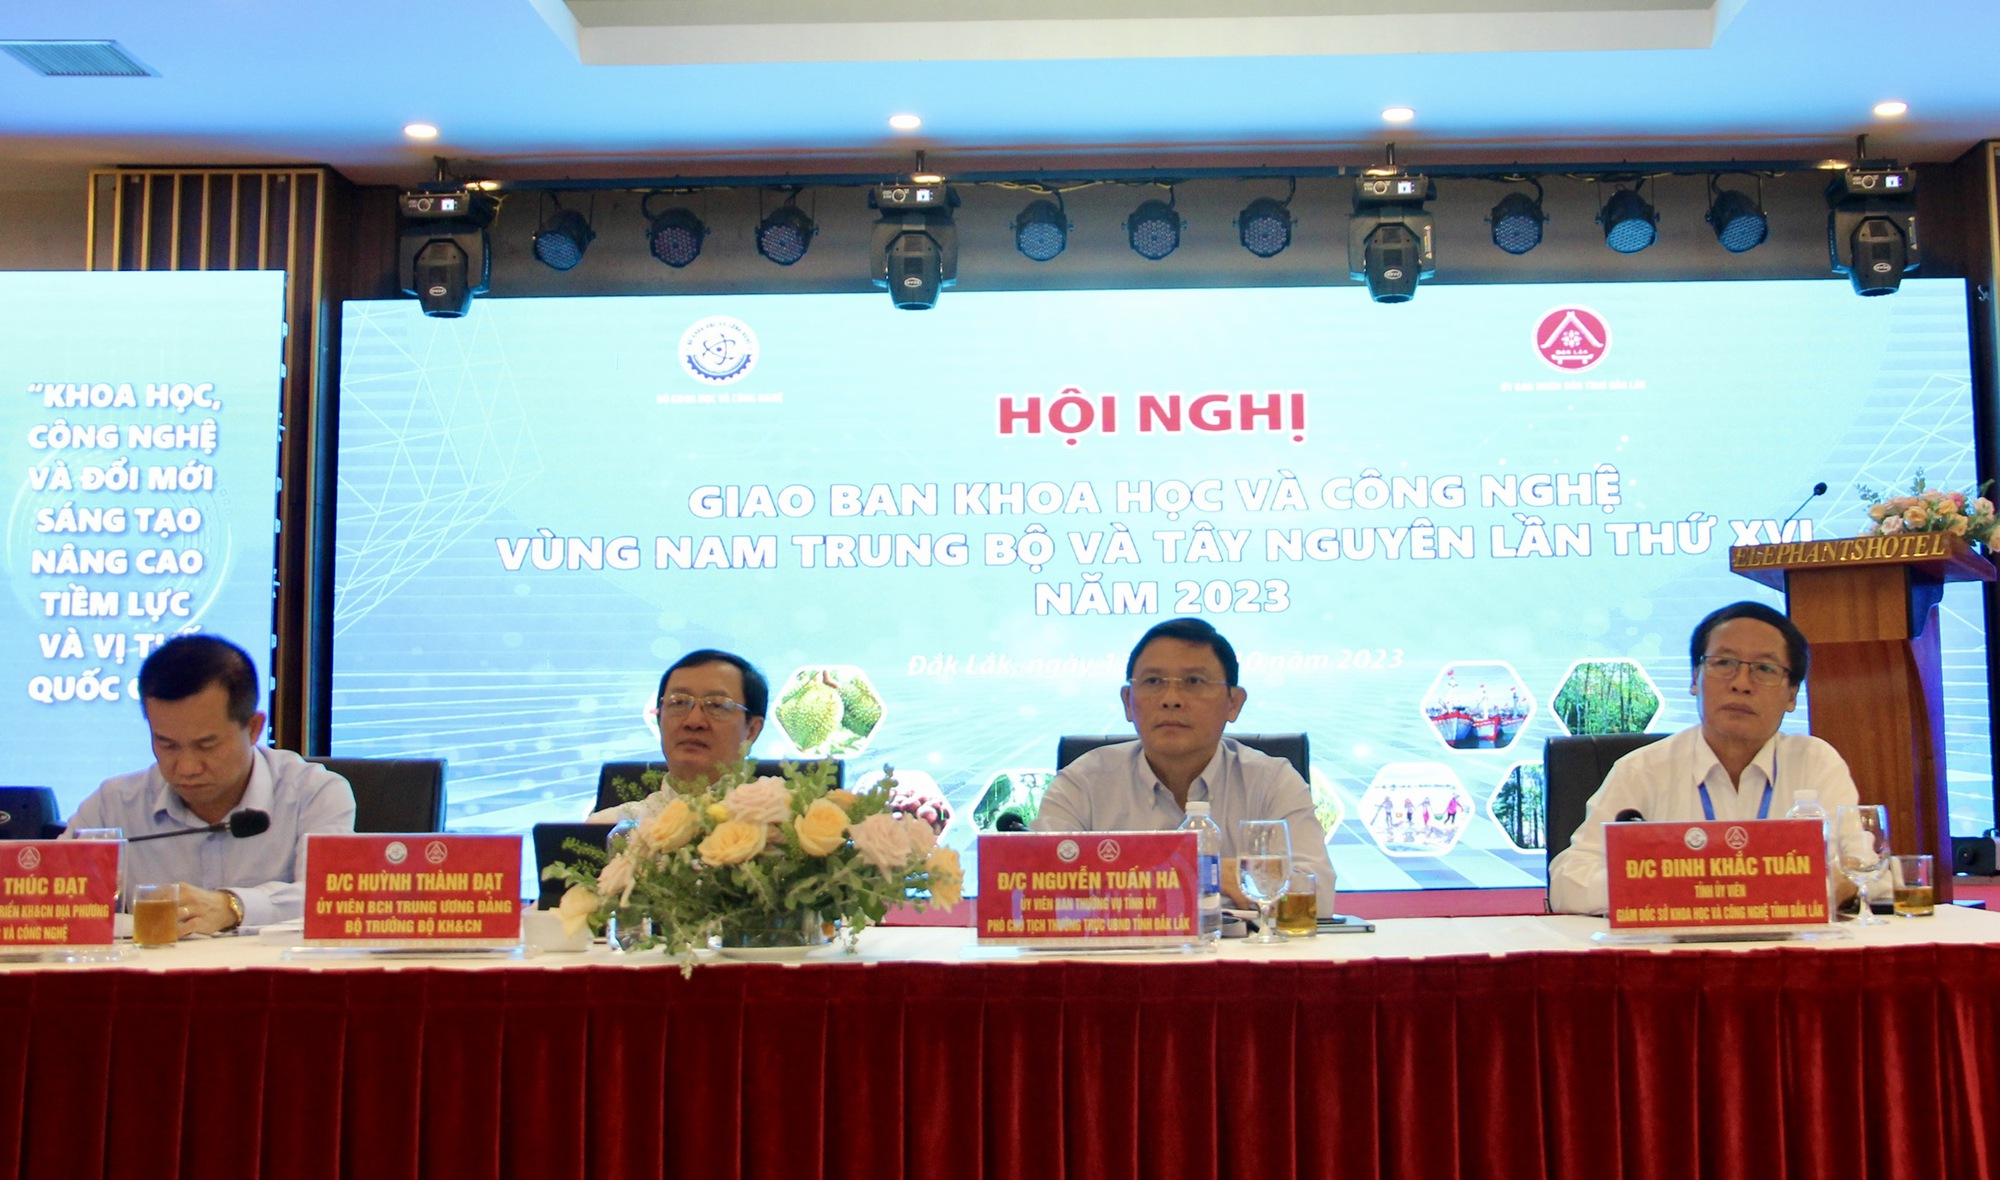 Bộ trưởng Huỳnh Thành Đạt: Vùng Nam Trung Bộ và Tây Nguyên từng bước khẳng định vai trò động lực trong phát triển KTXH - Ảnh 1.